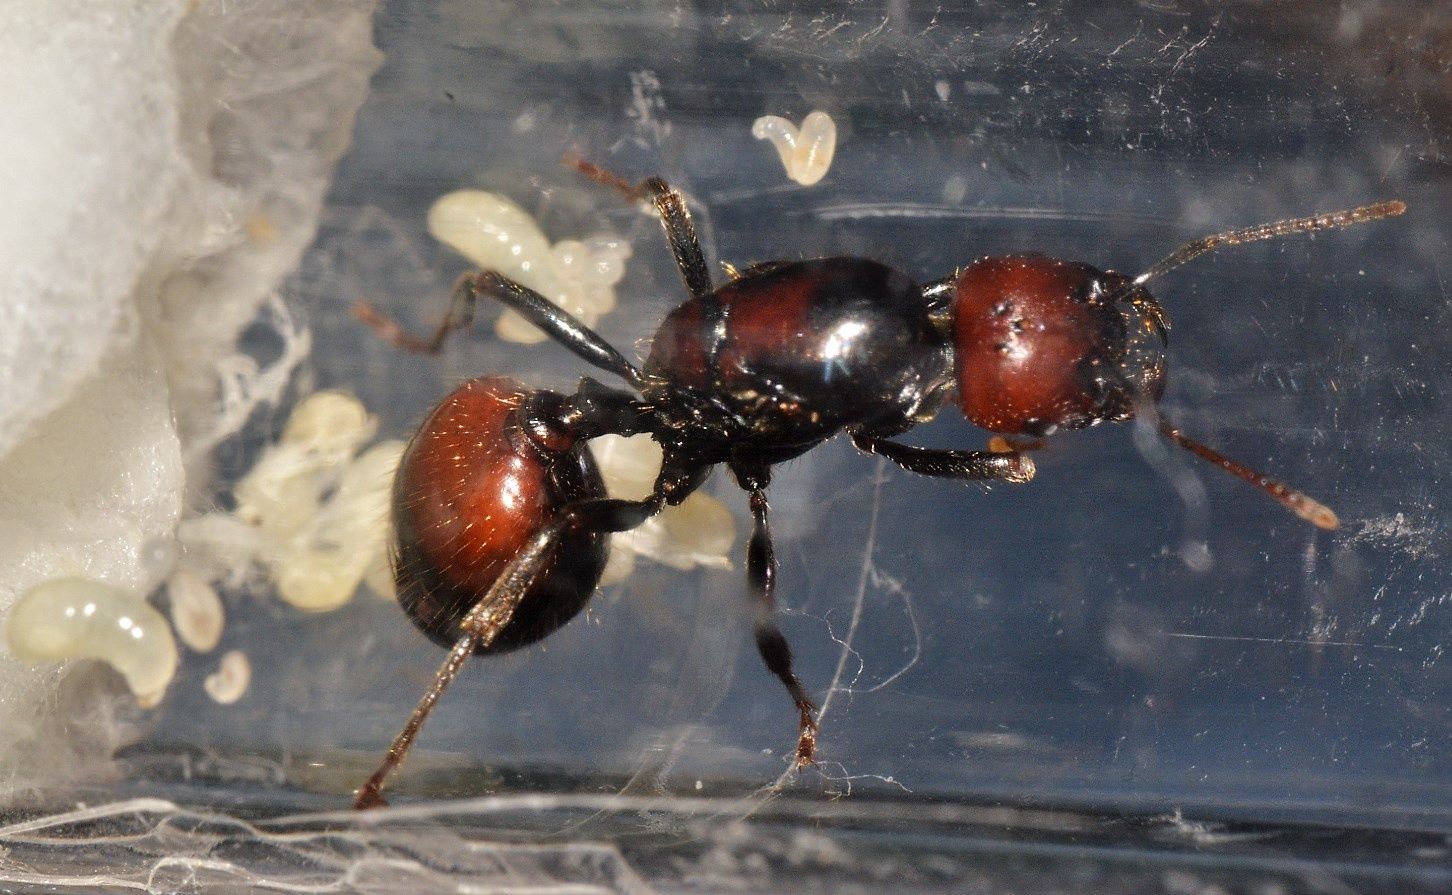 Messor barbarus królowe mrówek po zimowaniu